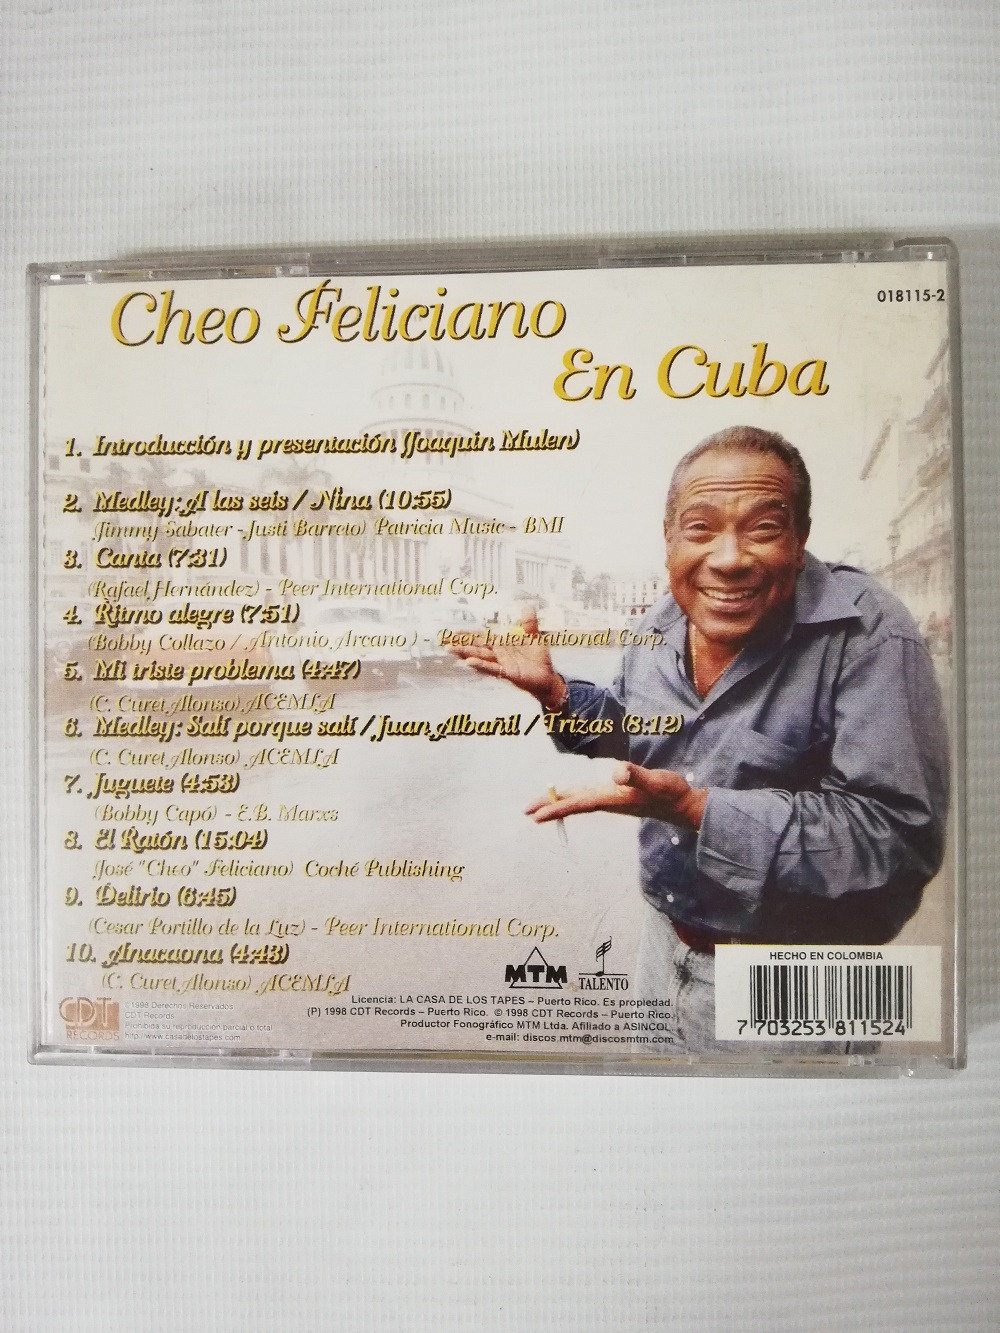 Imagen CD CHEO FELICIANO - CHEO FELICIANO EN CUBA 2